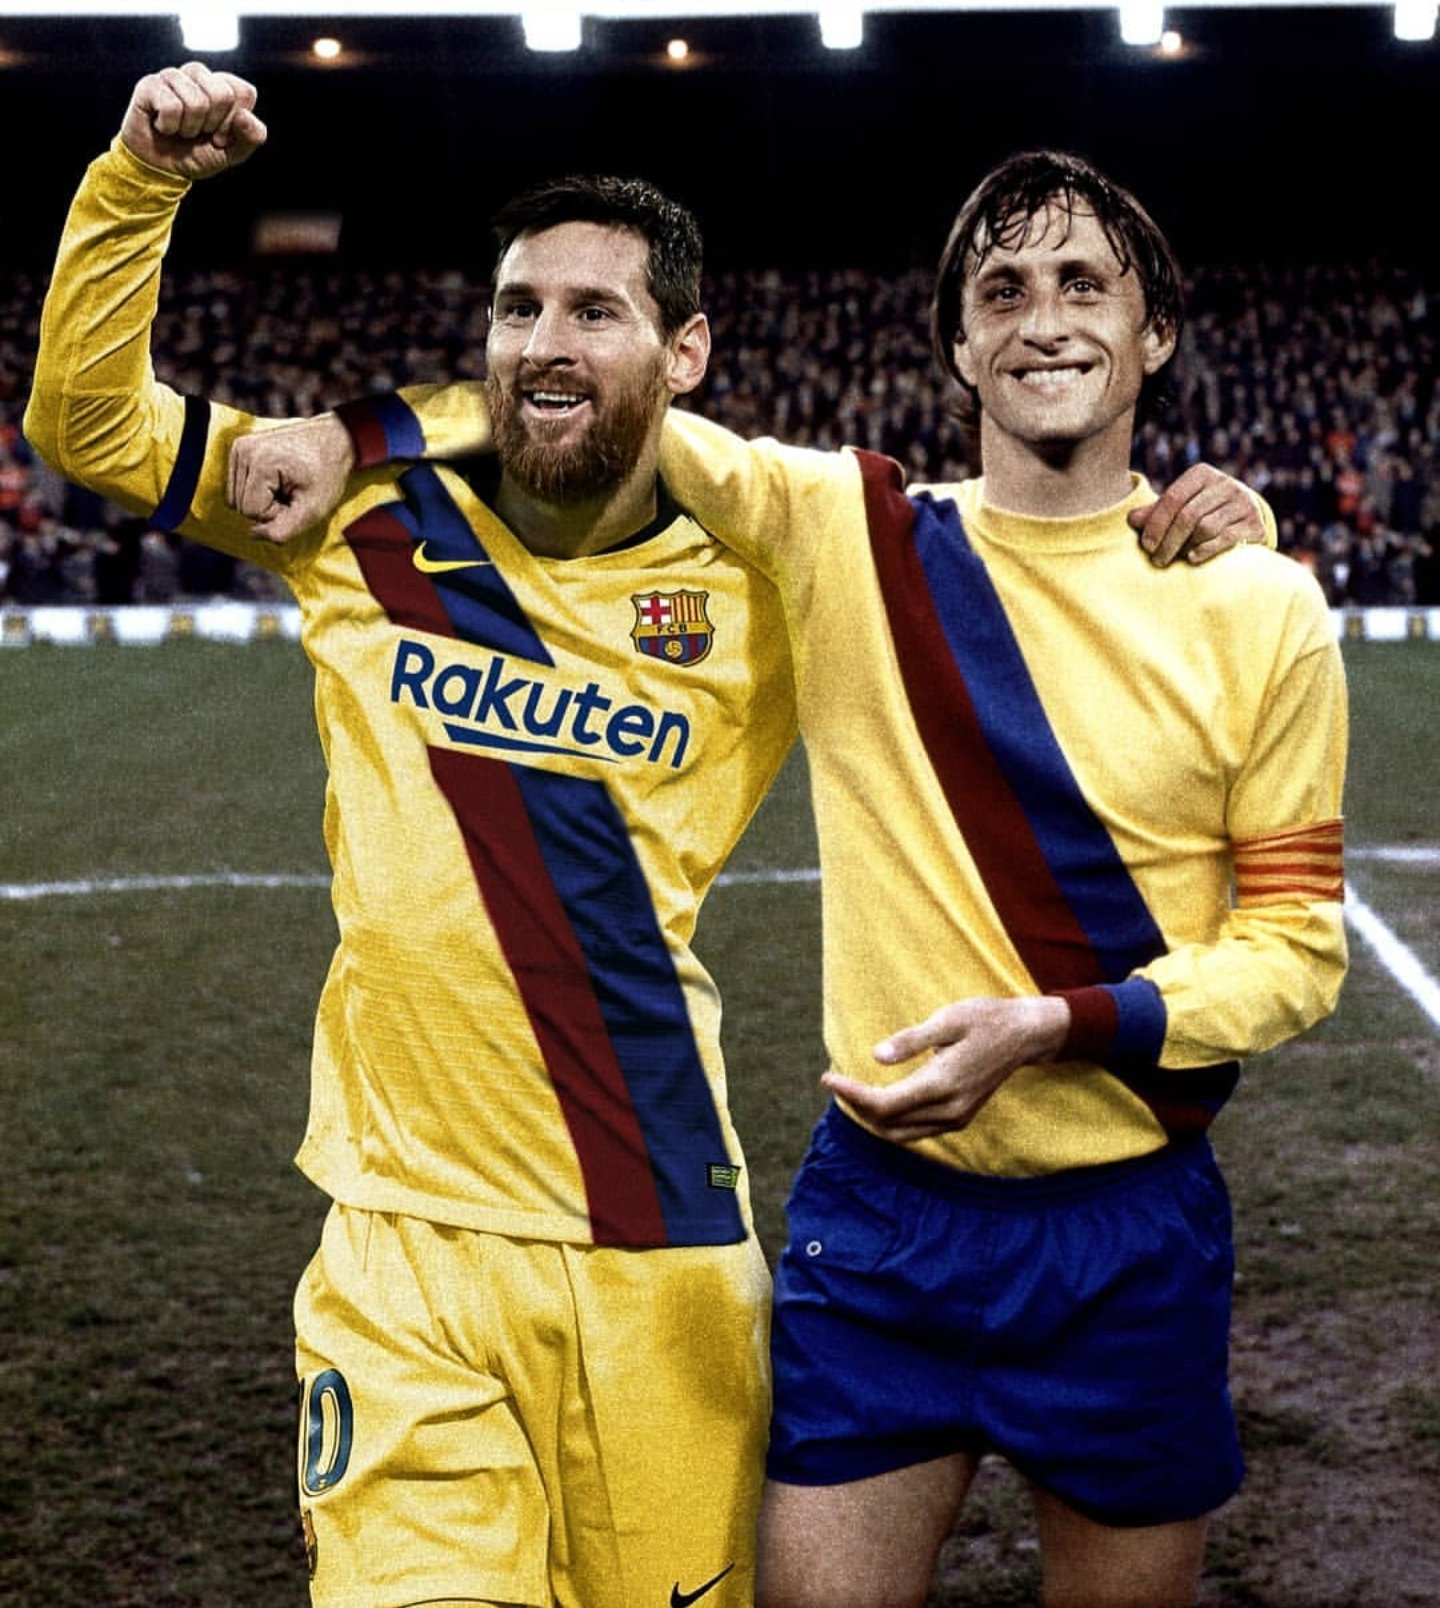 cruyff barcelona jersey